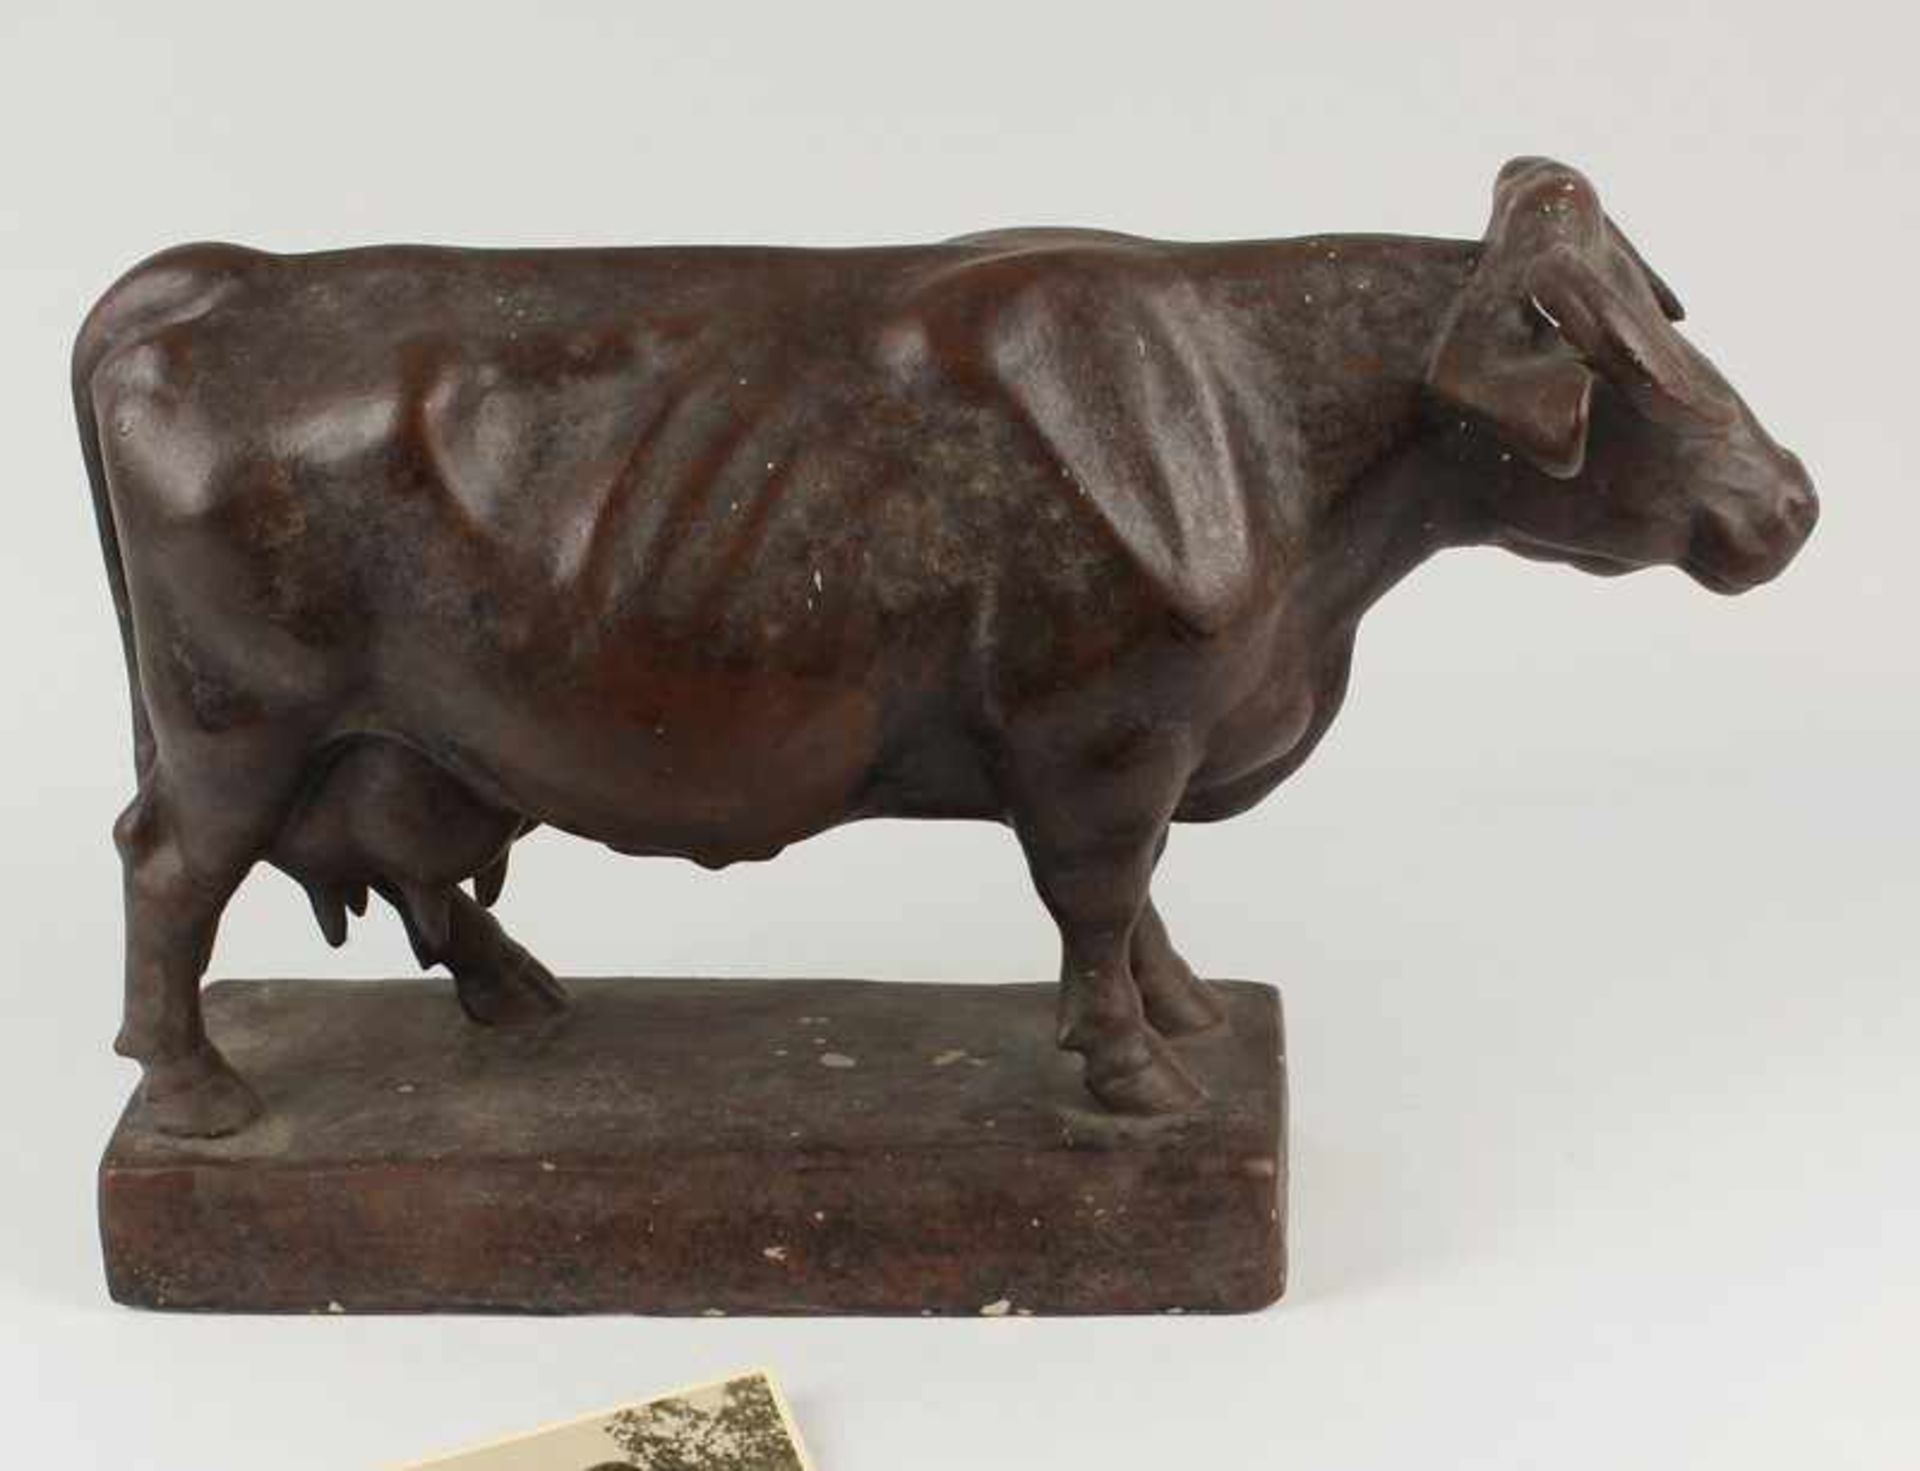 Christlieb, Harry Gips, braun gefasst, vollplastische Tierfigur einer stehenden Kuh, rechteckiger